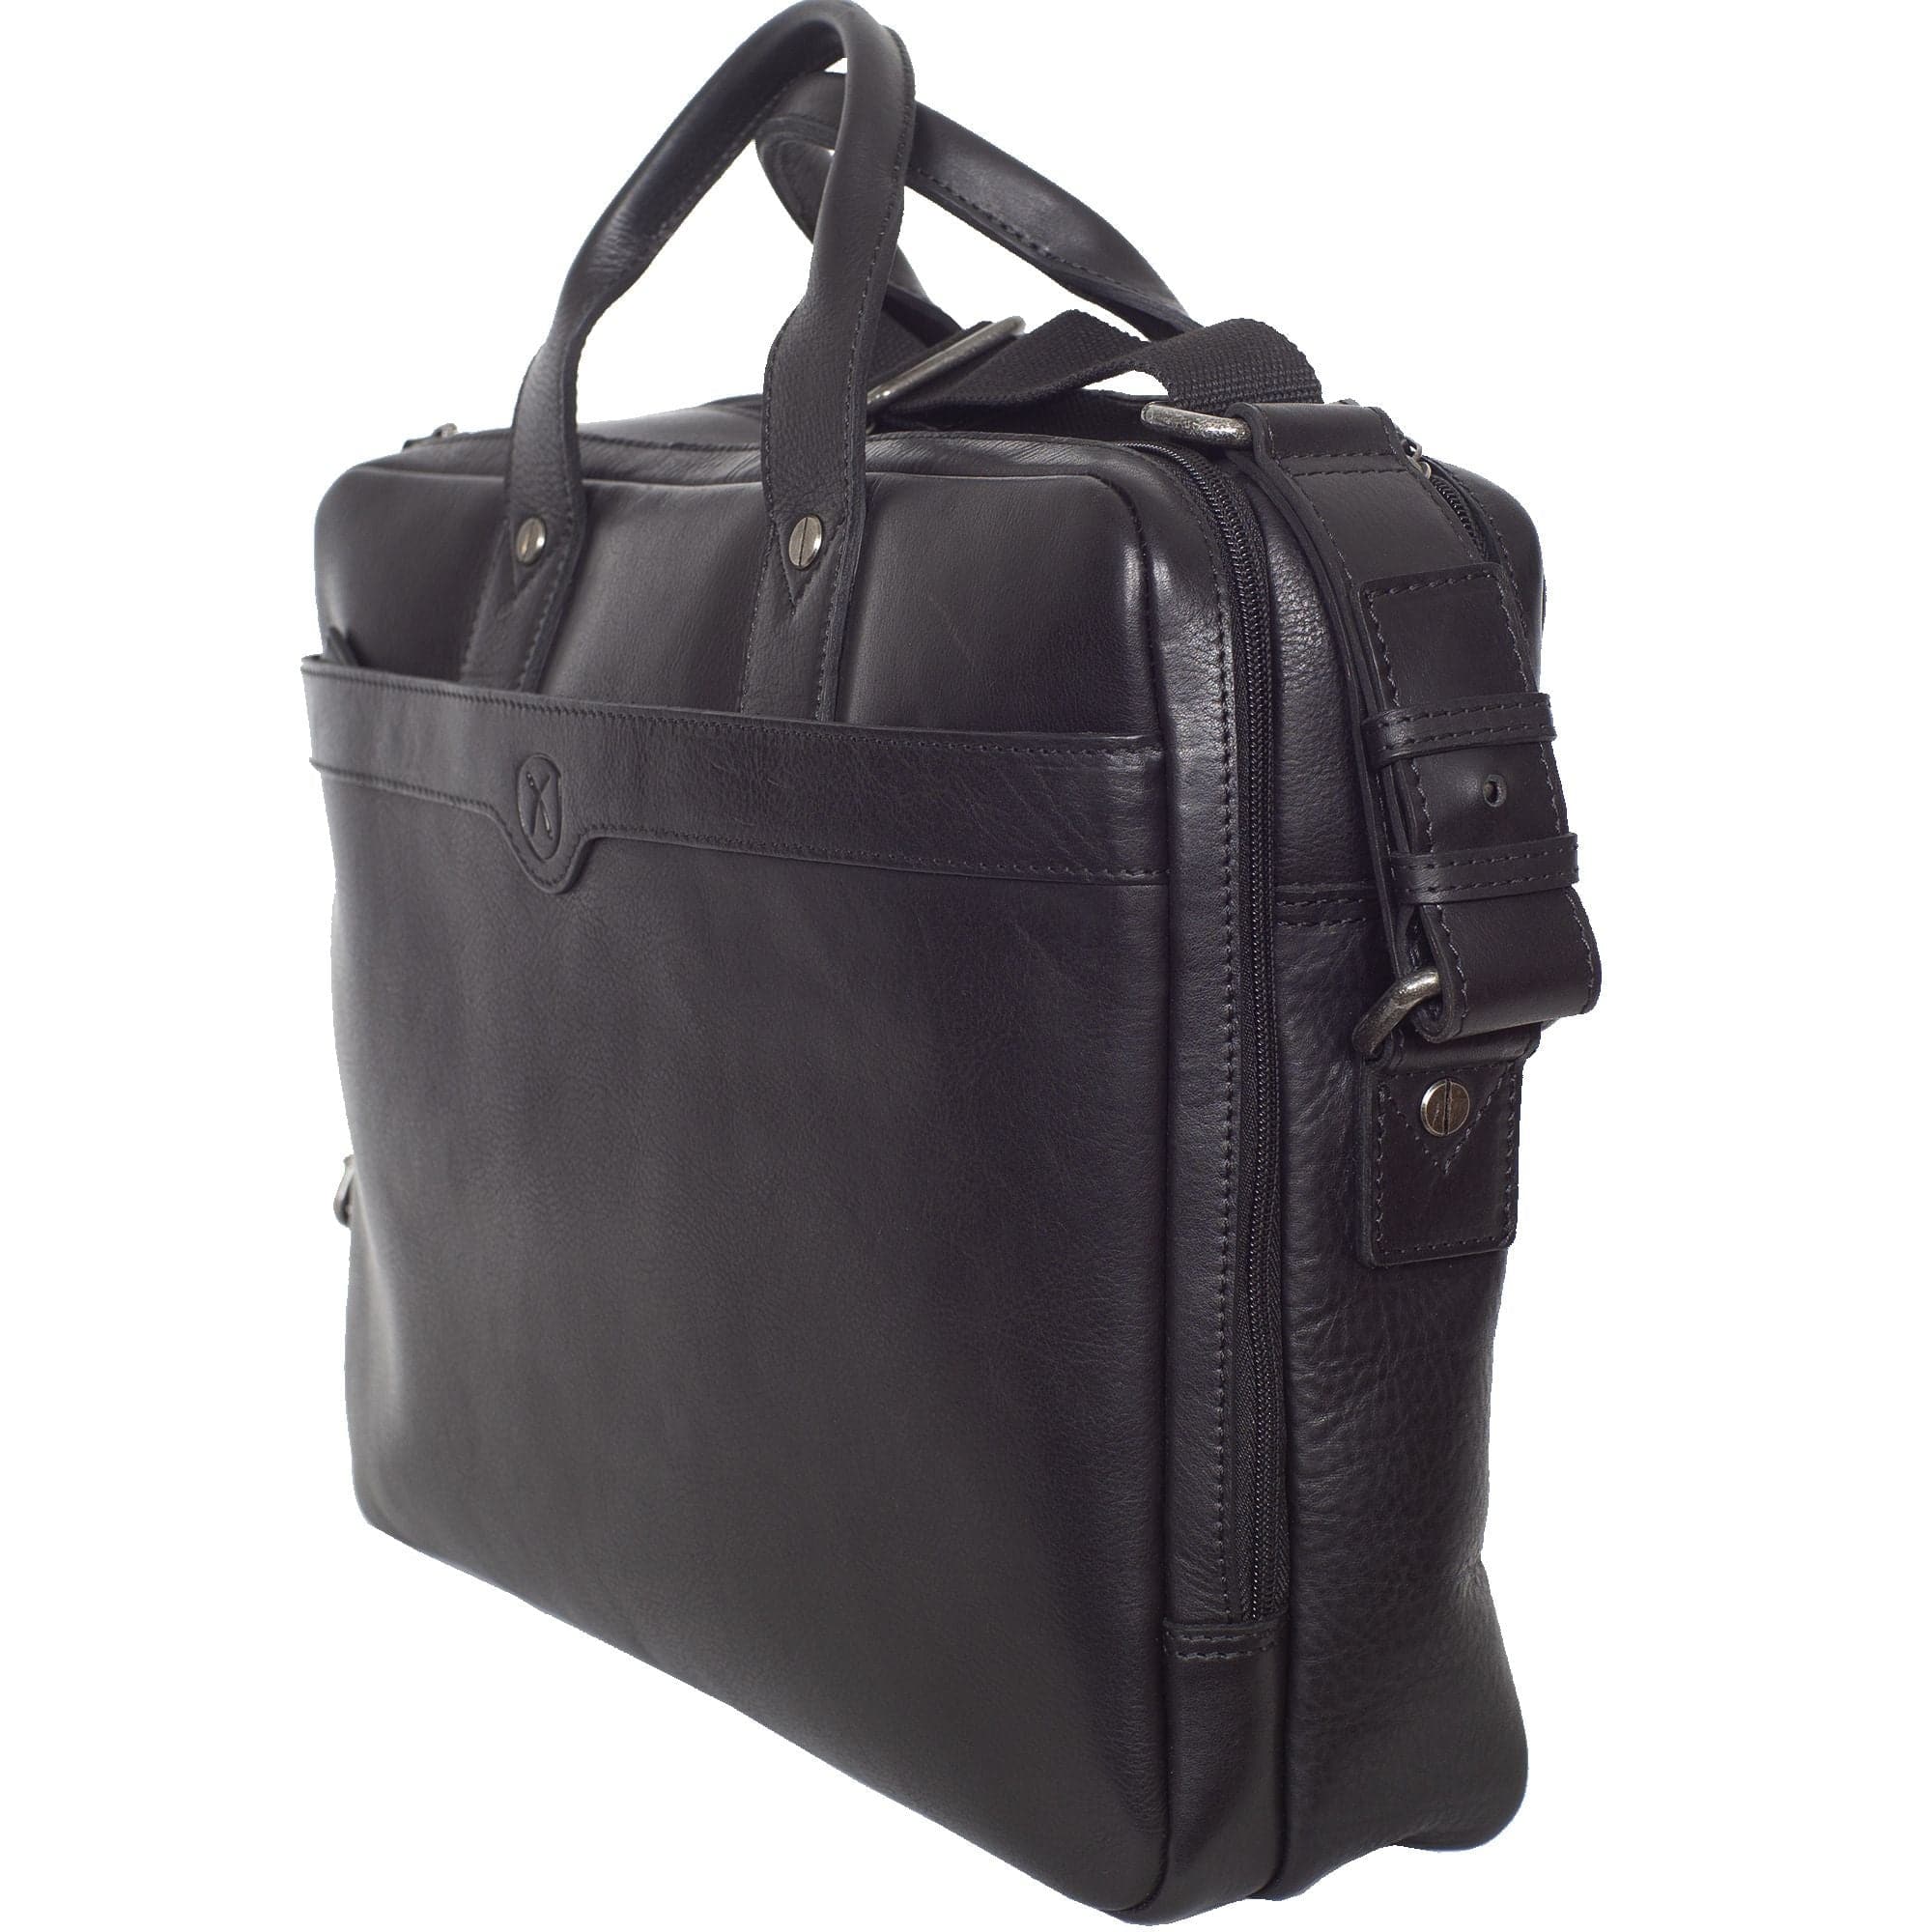 Laptoptasche Businesstasche 15 Zoll Leder schwarz 2 große Fächer